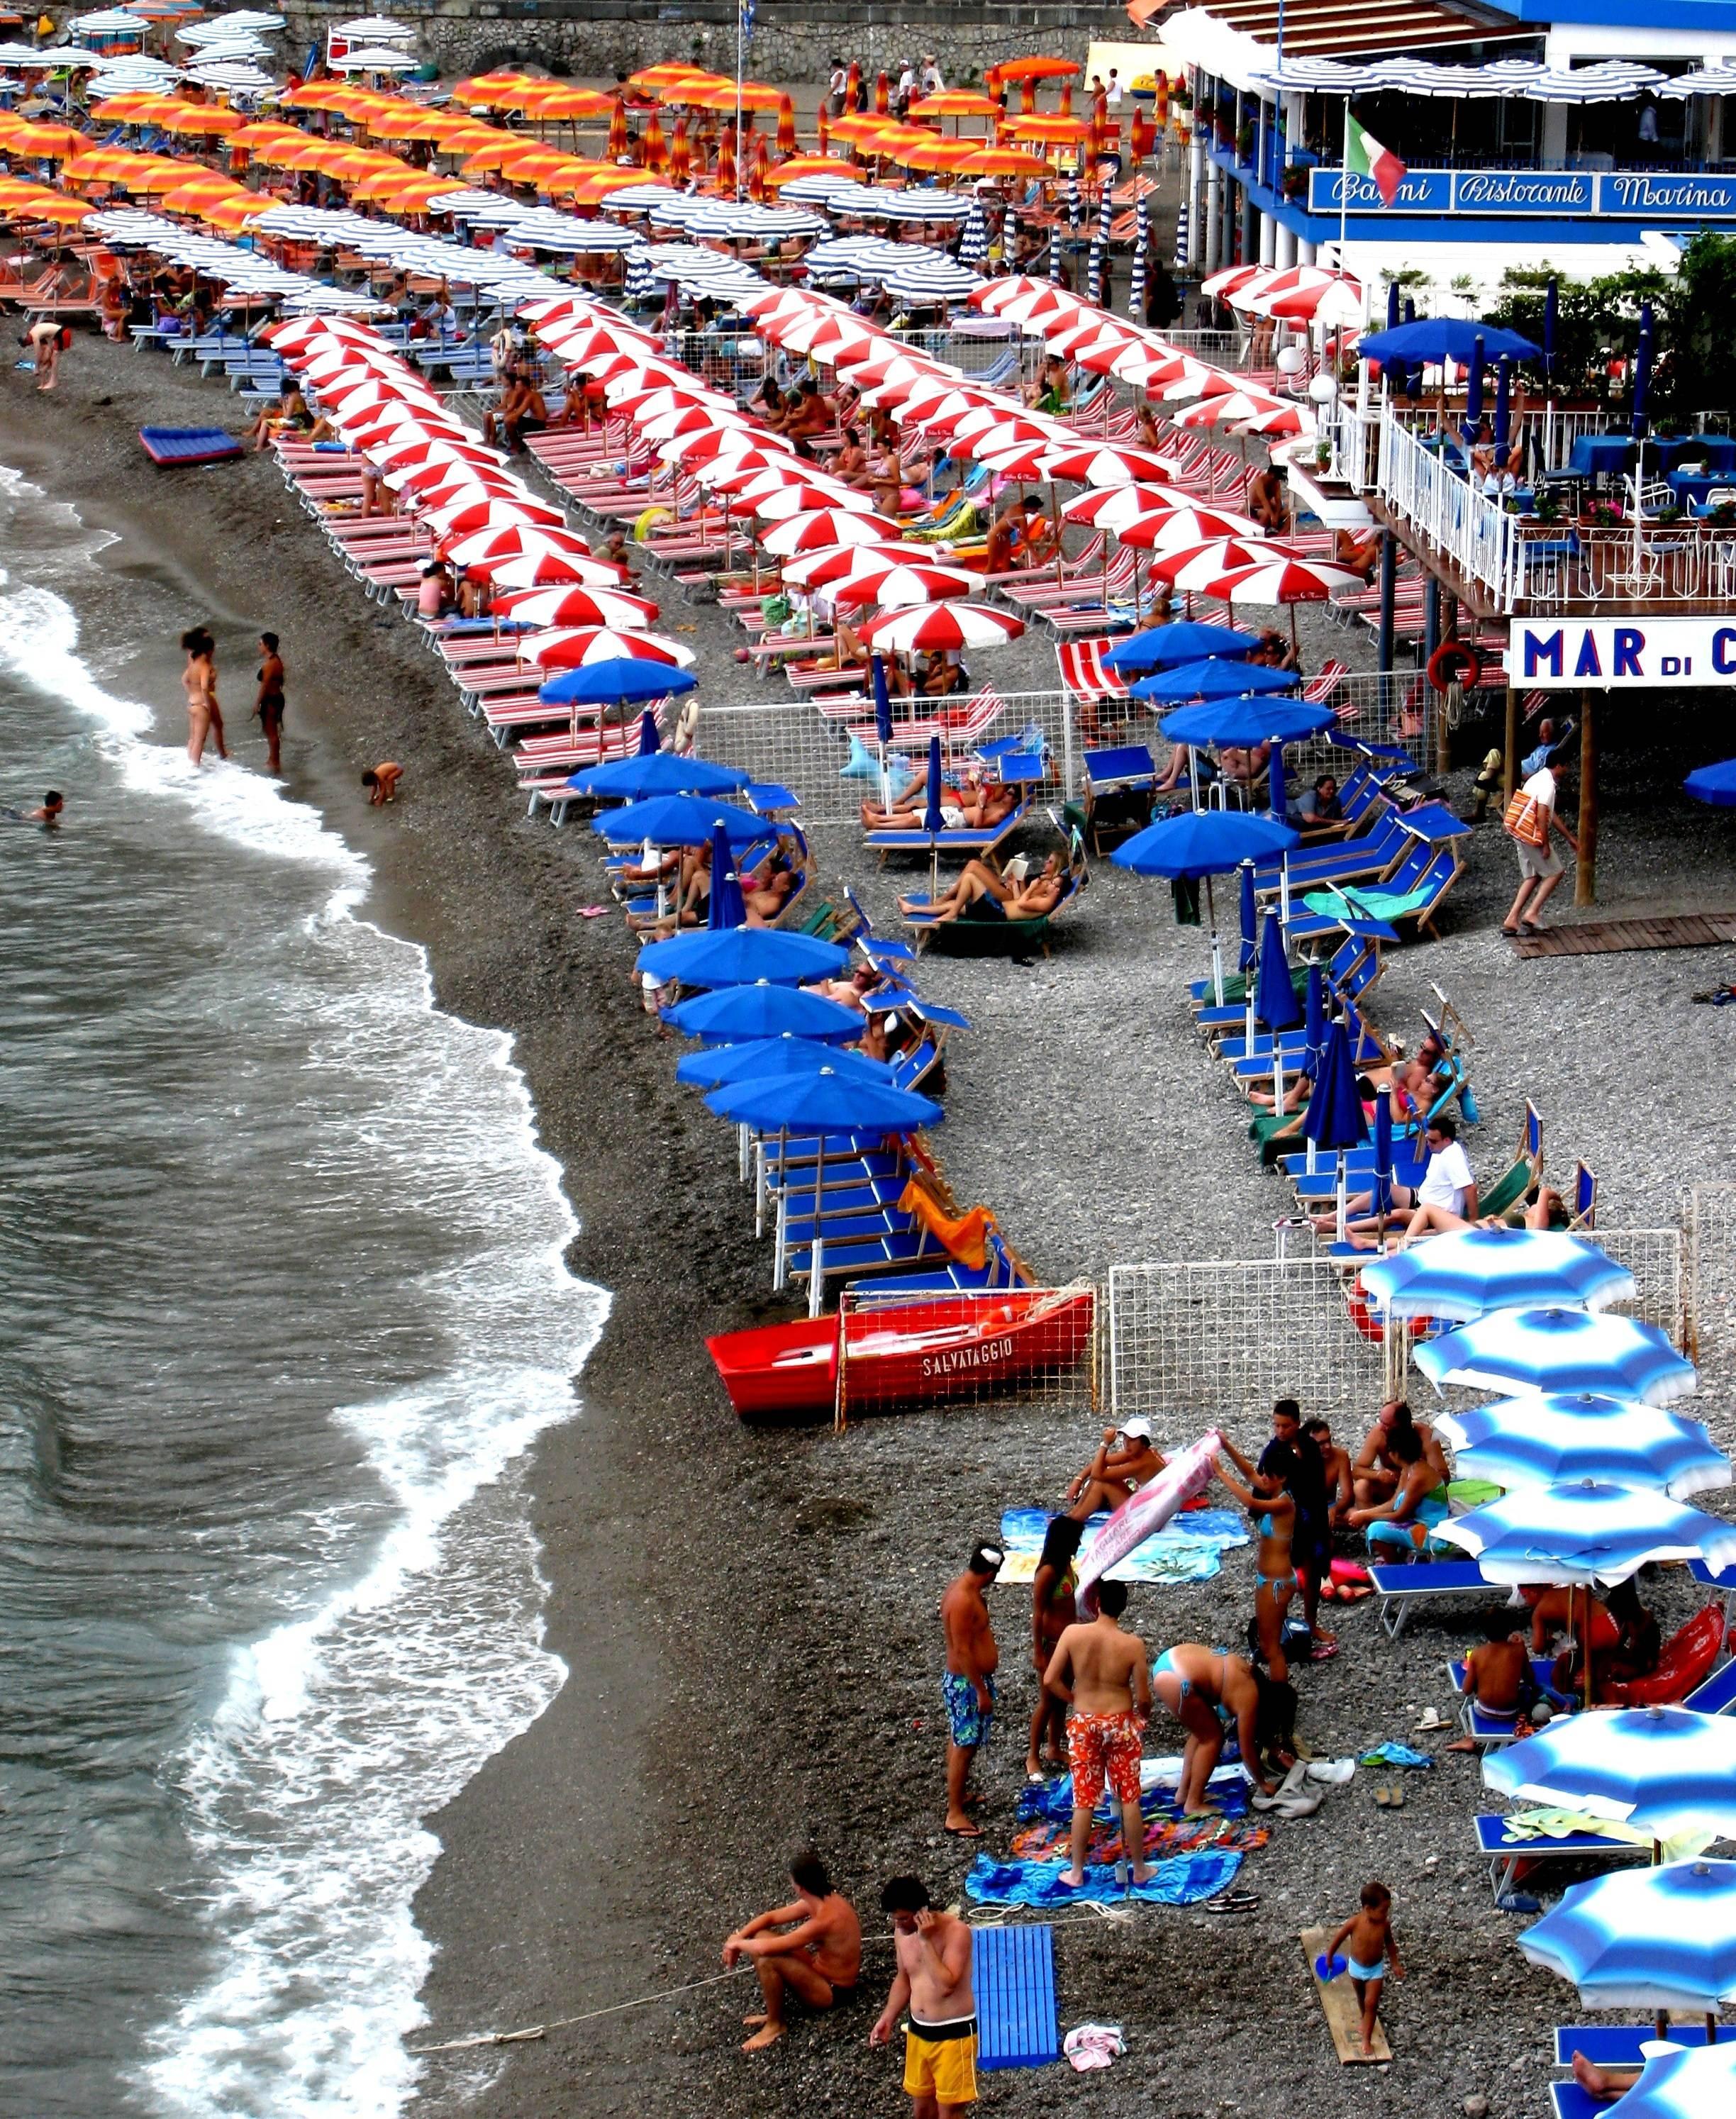 Amalfi" de DJ Leon dépeint la ville italienne emblématique de la Méditerranée et ses clubs de plage.  en bleu, orange, blanc, rouge et gris.

Photographe autodidacte, DJ LEON a commencé à se consacrer exclusivement à la photographie après avoir pris